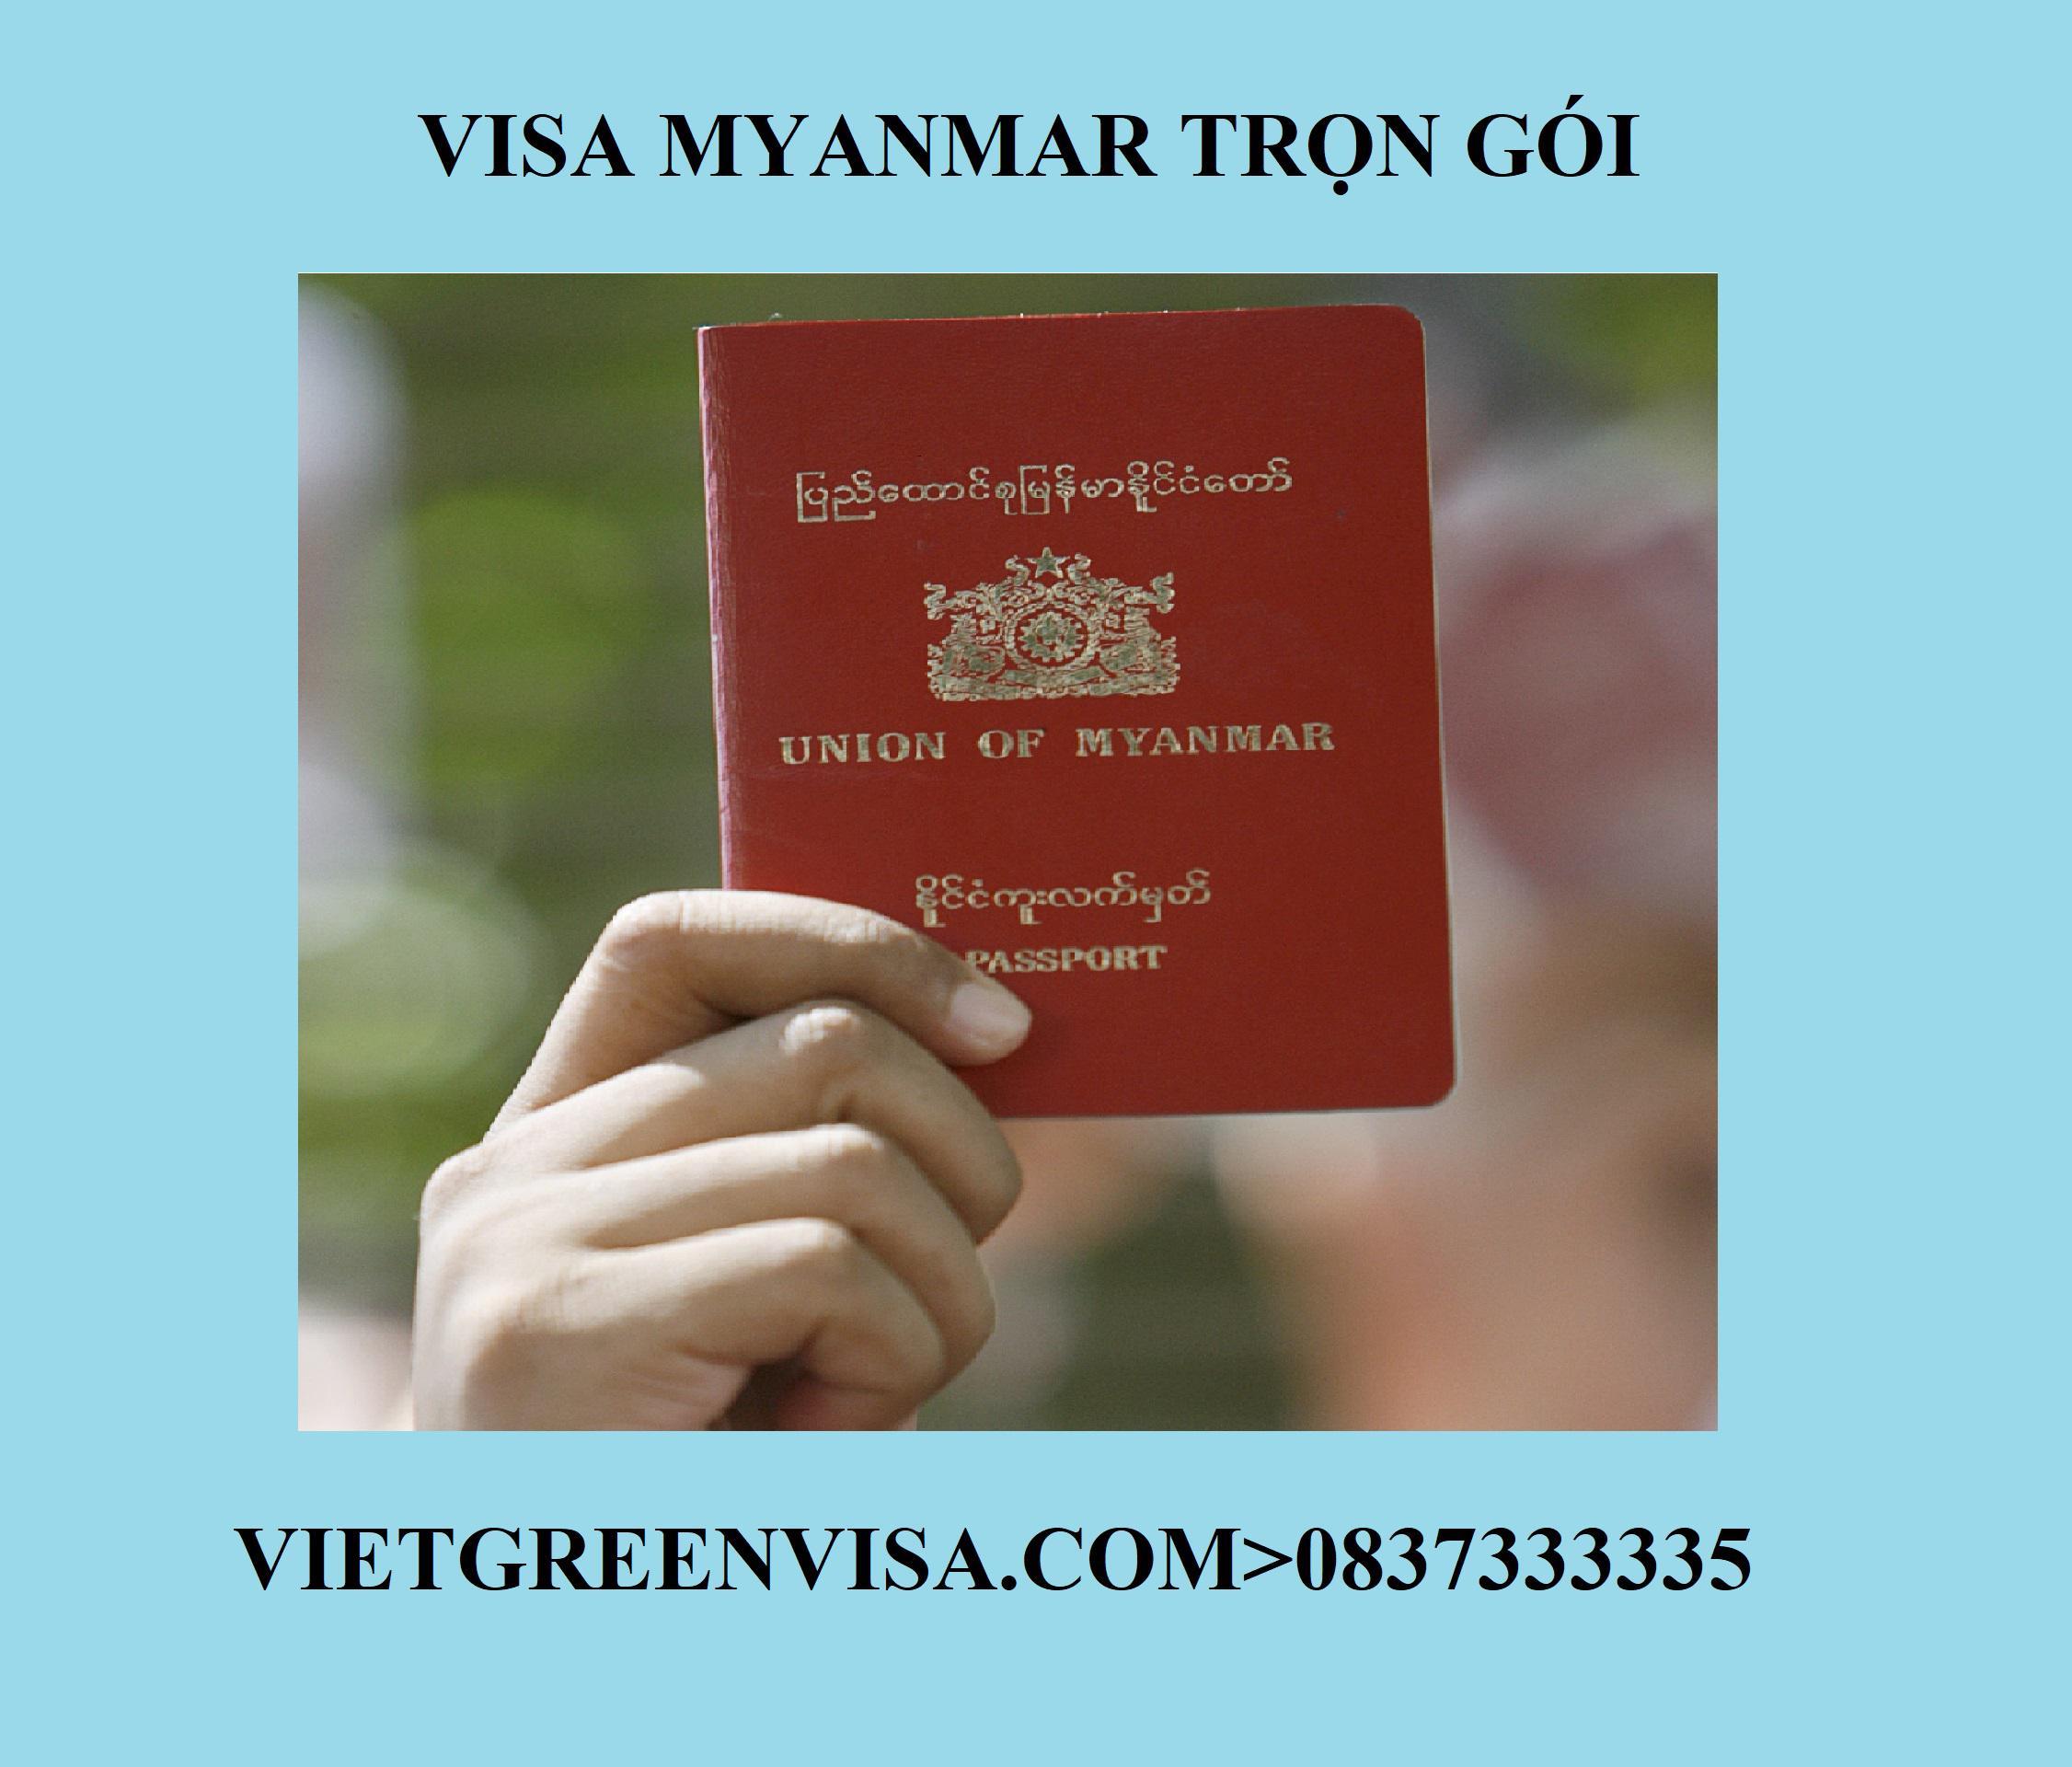 Dịch vụ visa thuyền viên đi Myanmar nhanh chóng, uy tín